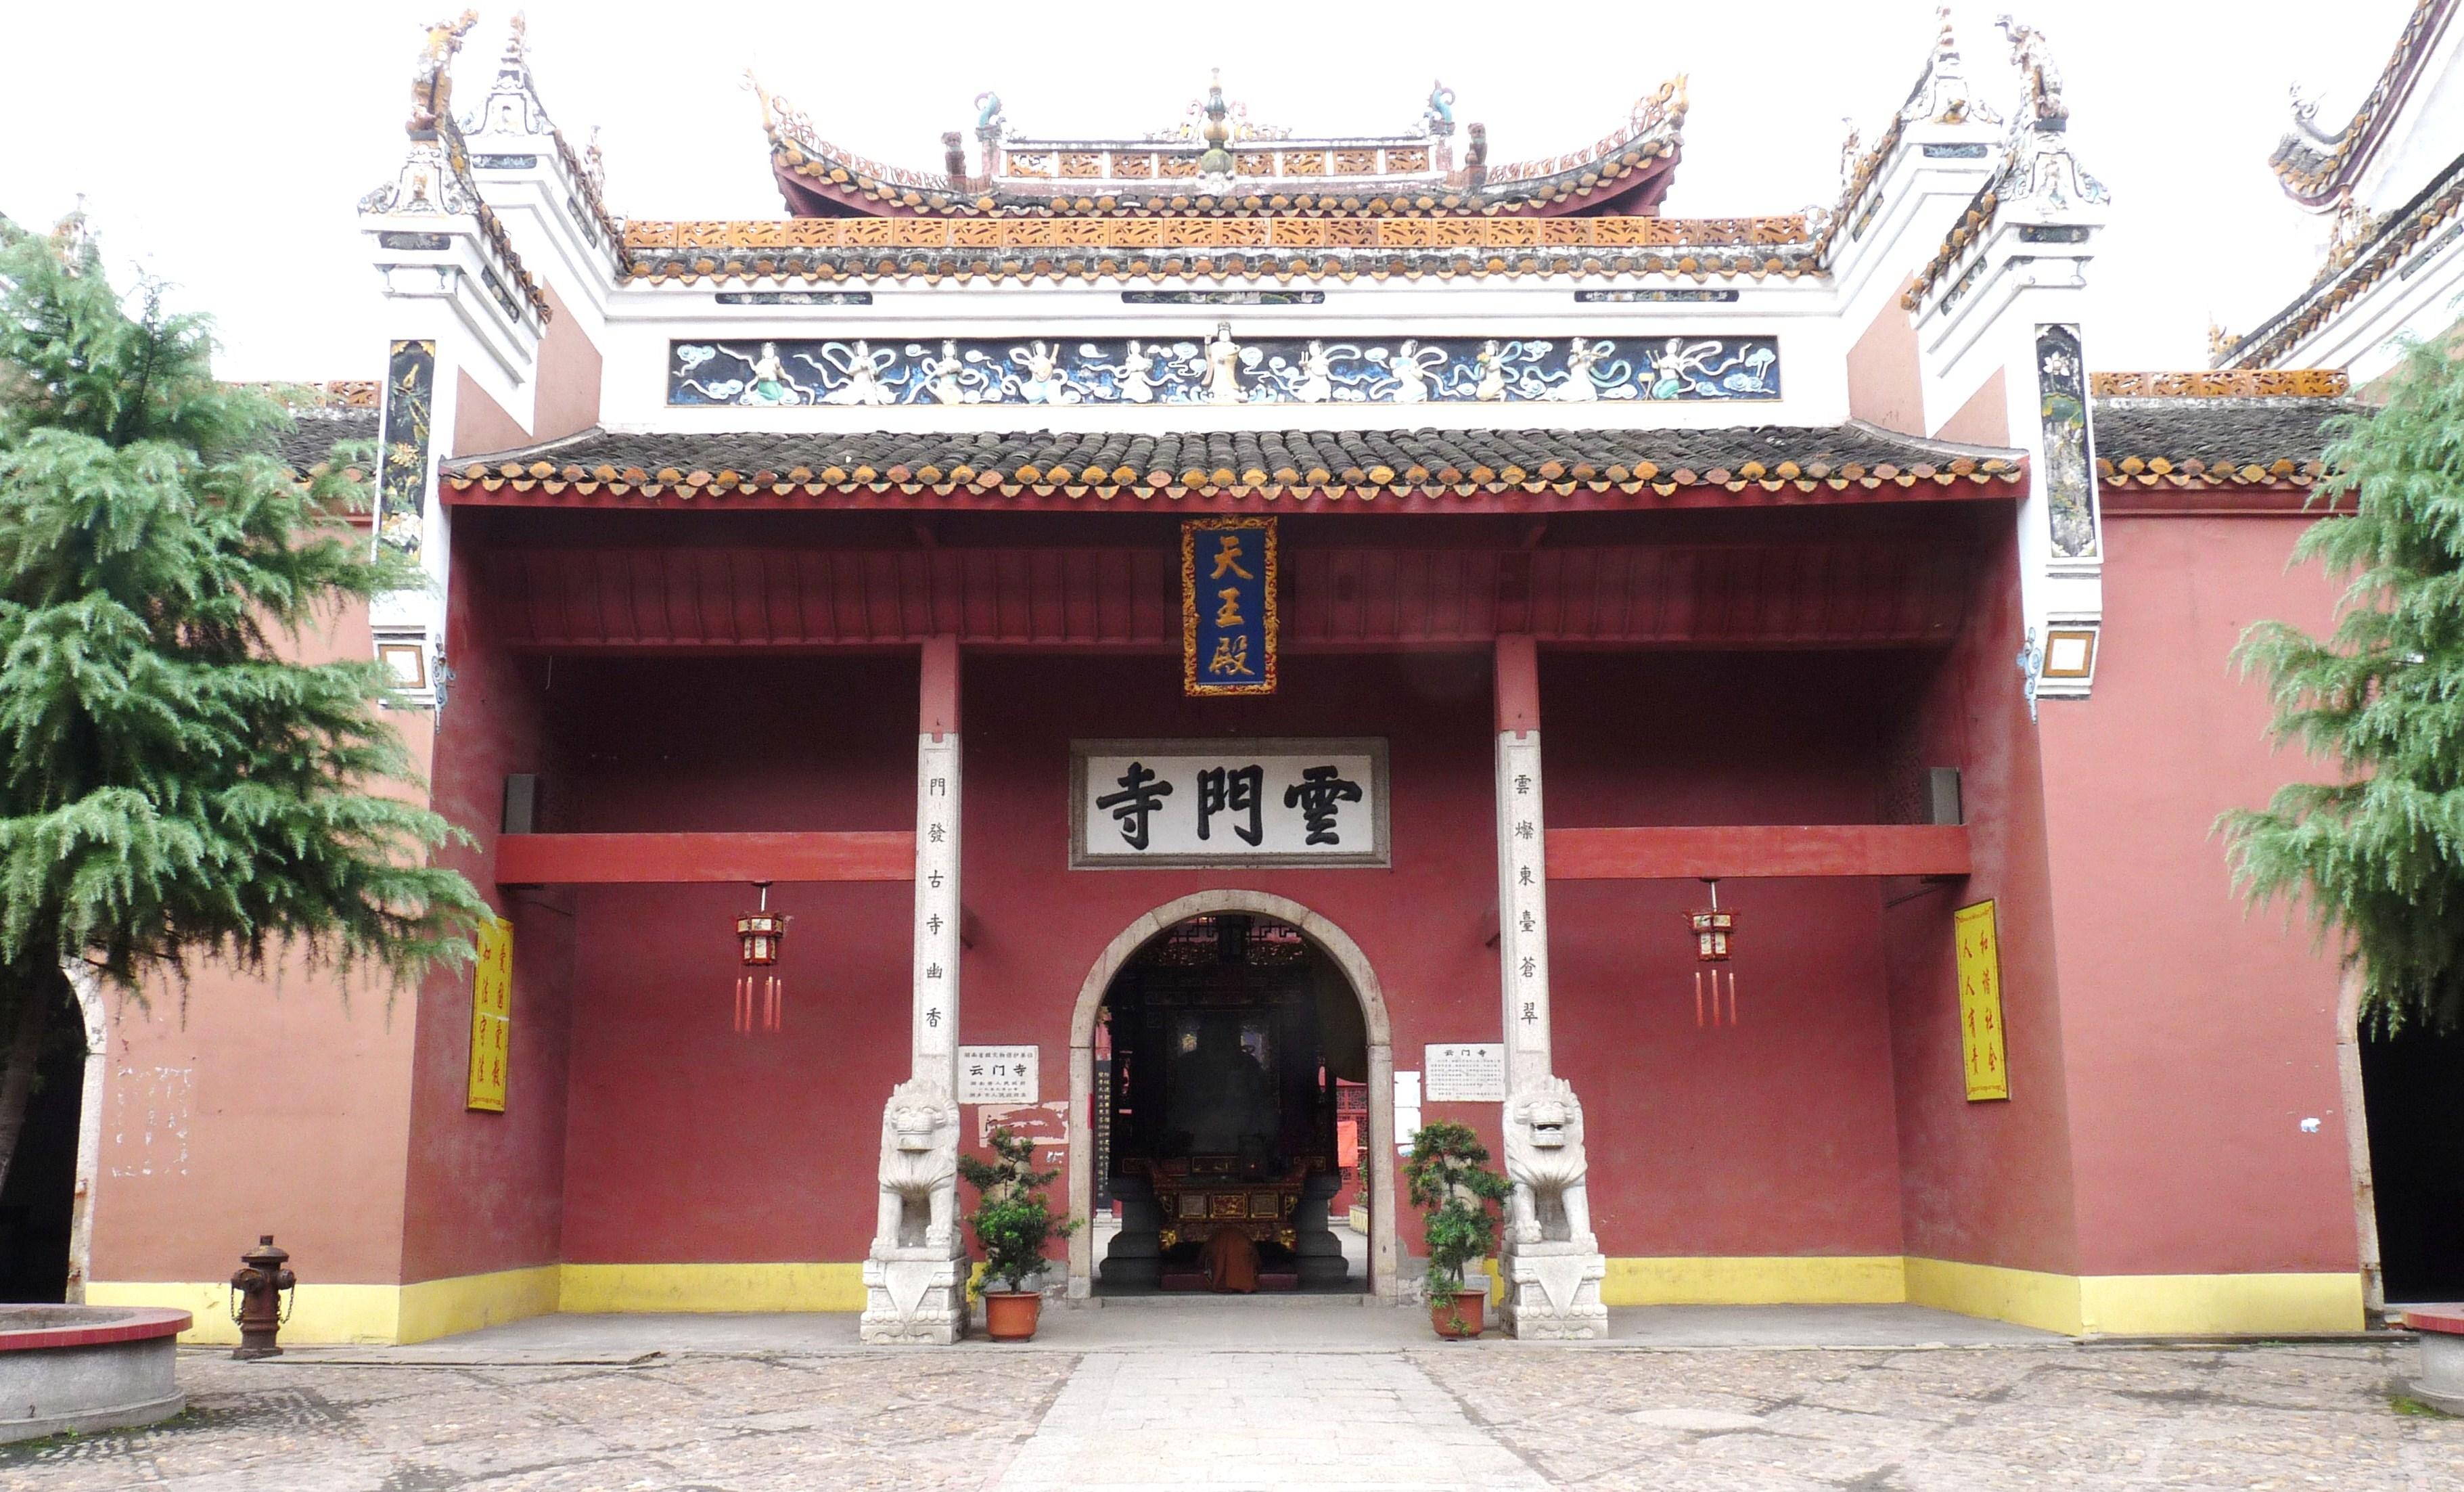 云门寺,位于湖南省湘乡市.